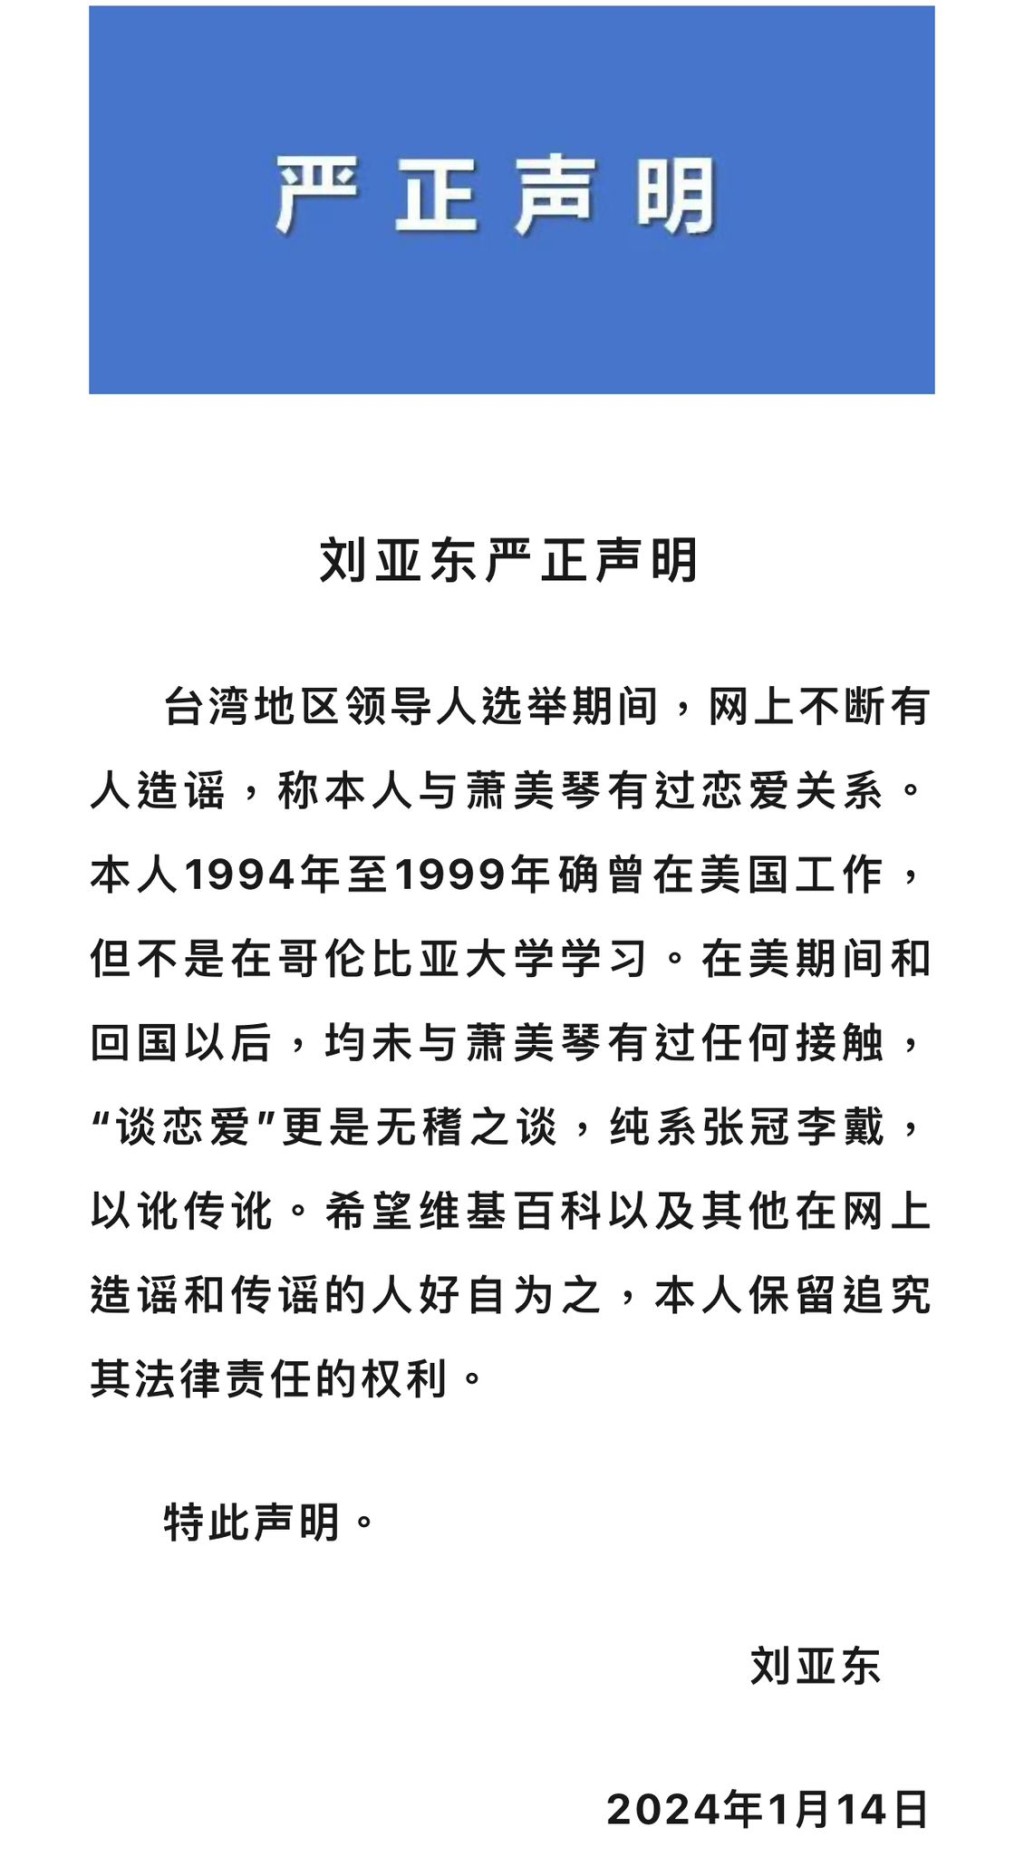 现任南开大学新闻与传播学院院长刘亚东发表严正声明，澄清从未与萧美琴有过任何接触。